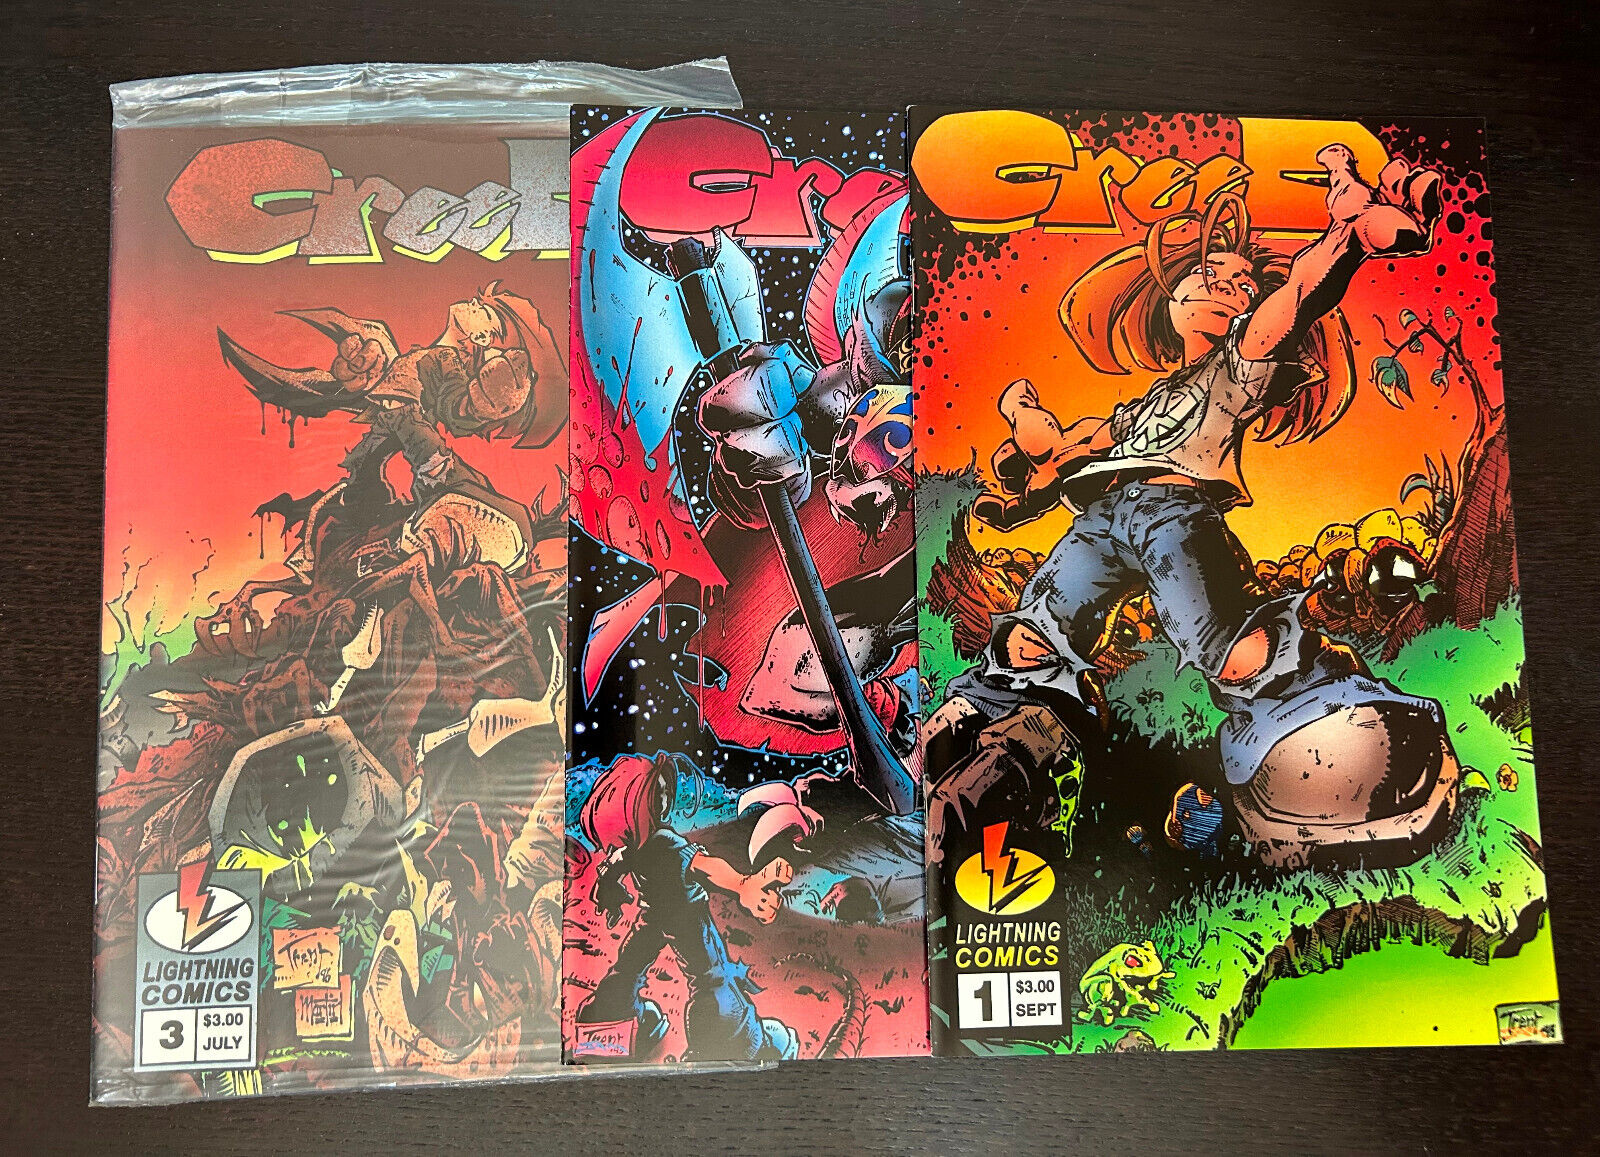 CREED #1-3 (Lightning Comics 1995) -- #1 2 3 -- FULL Set